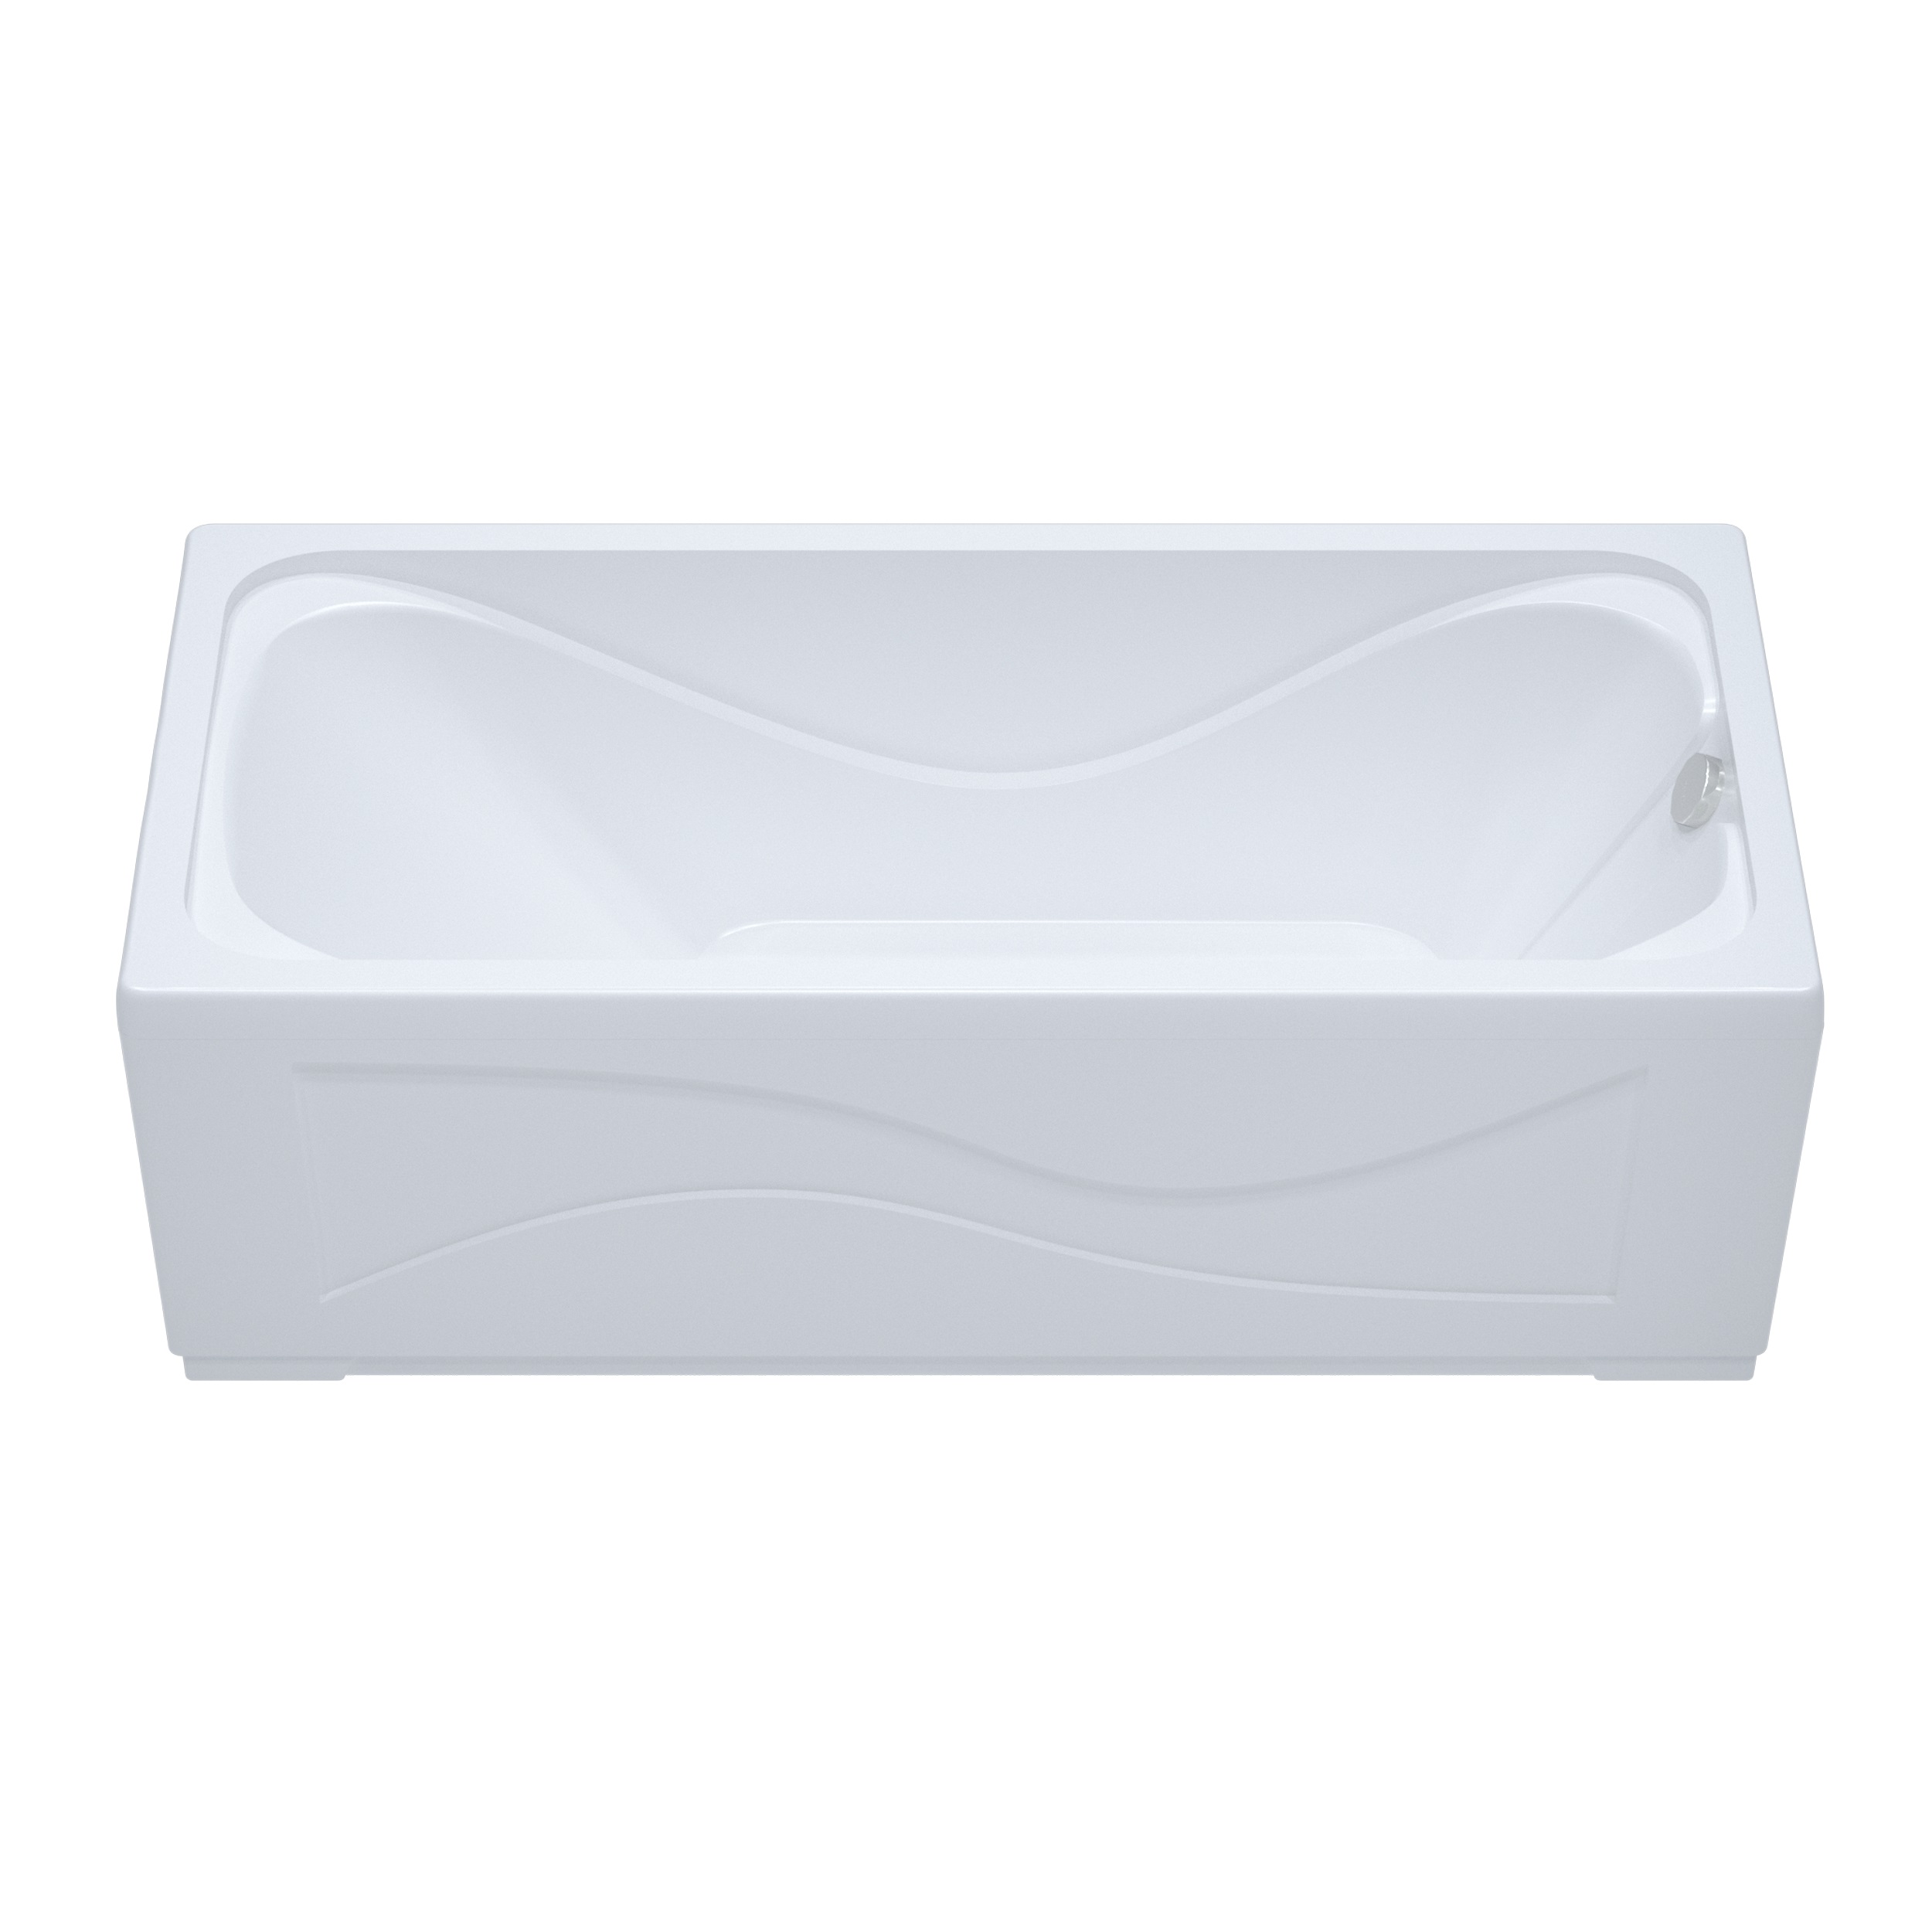 Акриловая ванна Тритон Стандарт 160x70, размер 160x70, цвет белый Н0000099329 - фото 2